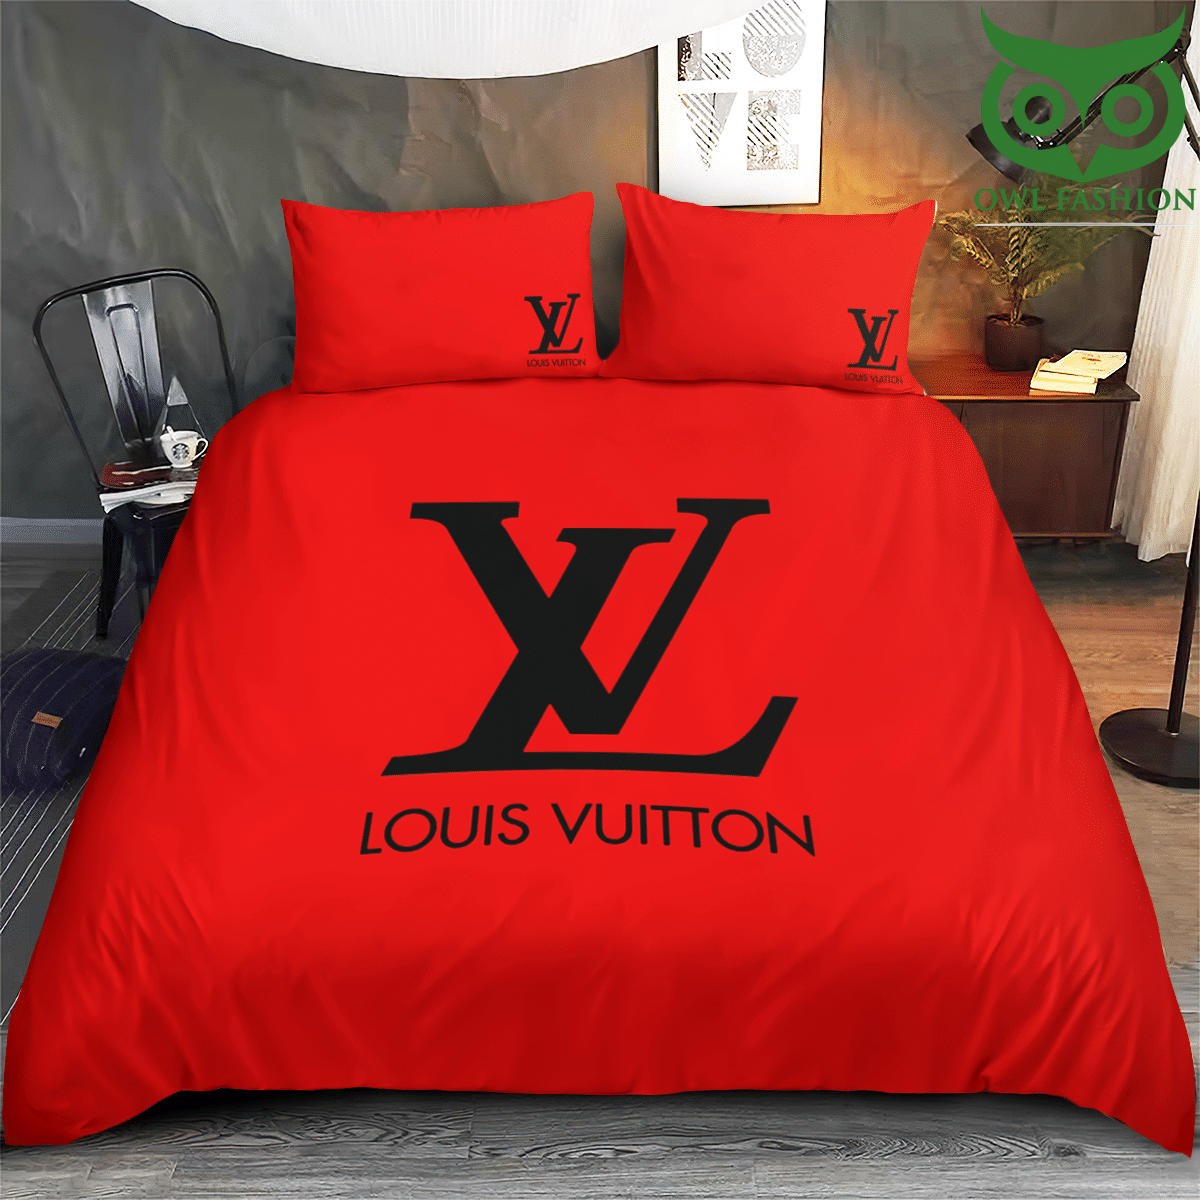 77 Premium red Louis Vuitton brand bedding set